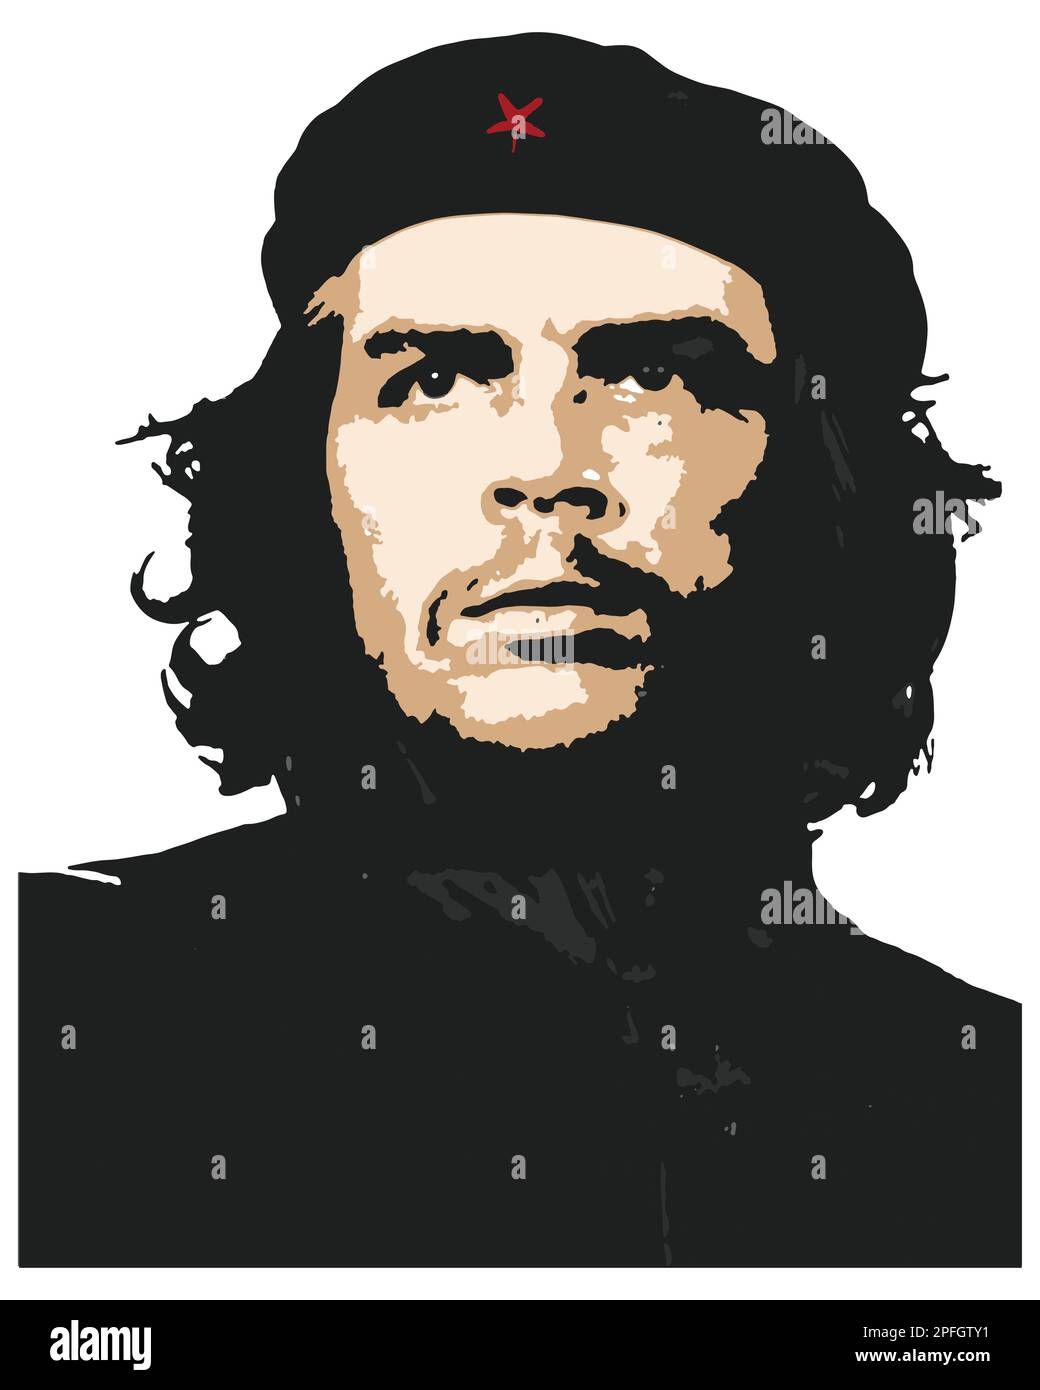 Che Guevara (Eine wichtige Figur der kubanischen Revolution Che Guevara) Vektorbildnis Stock Vektor